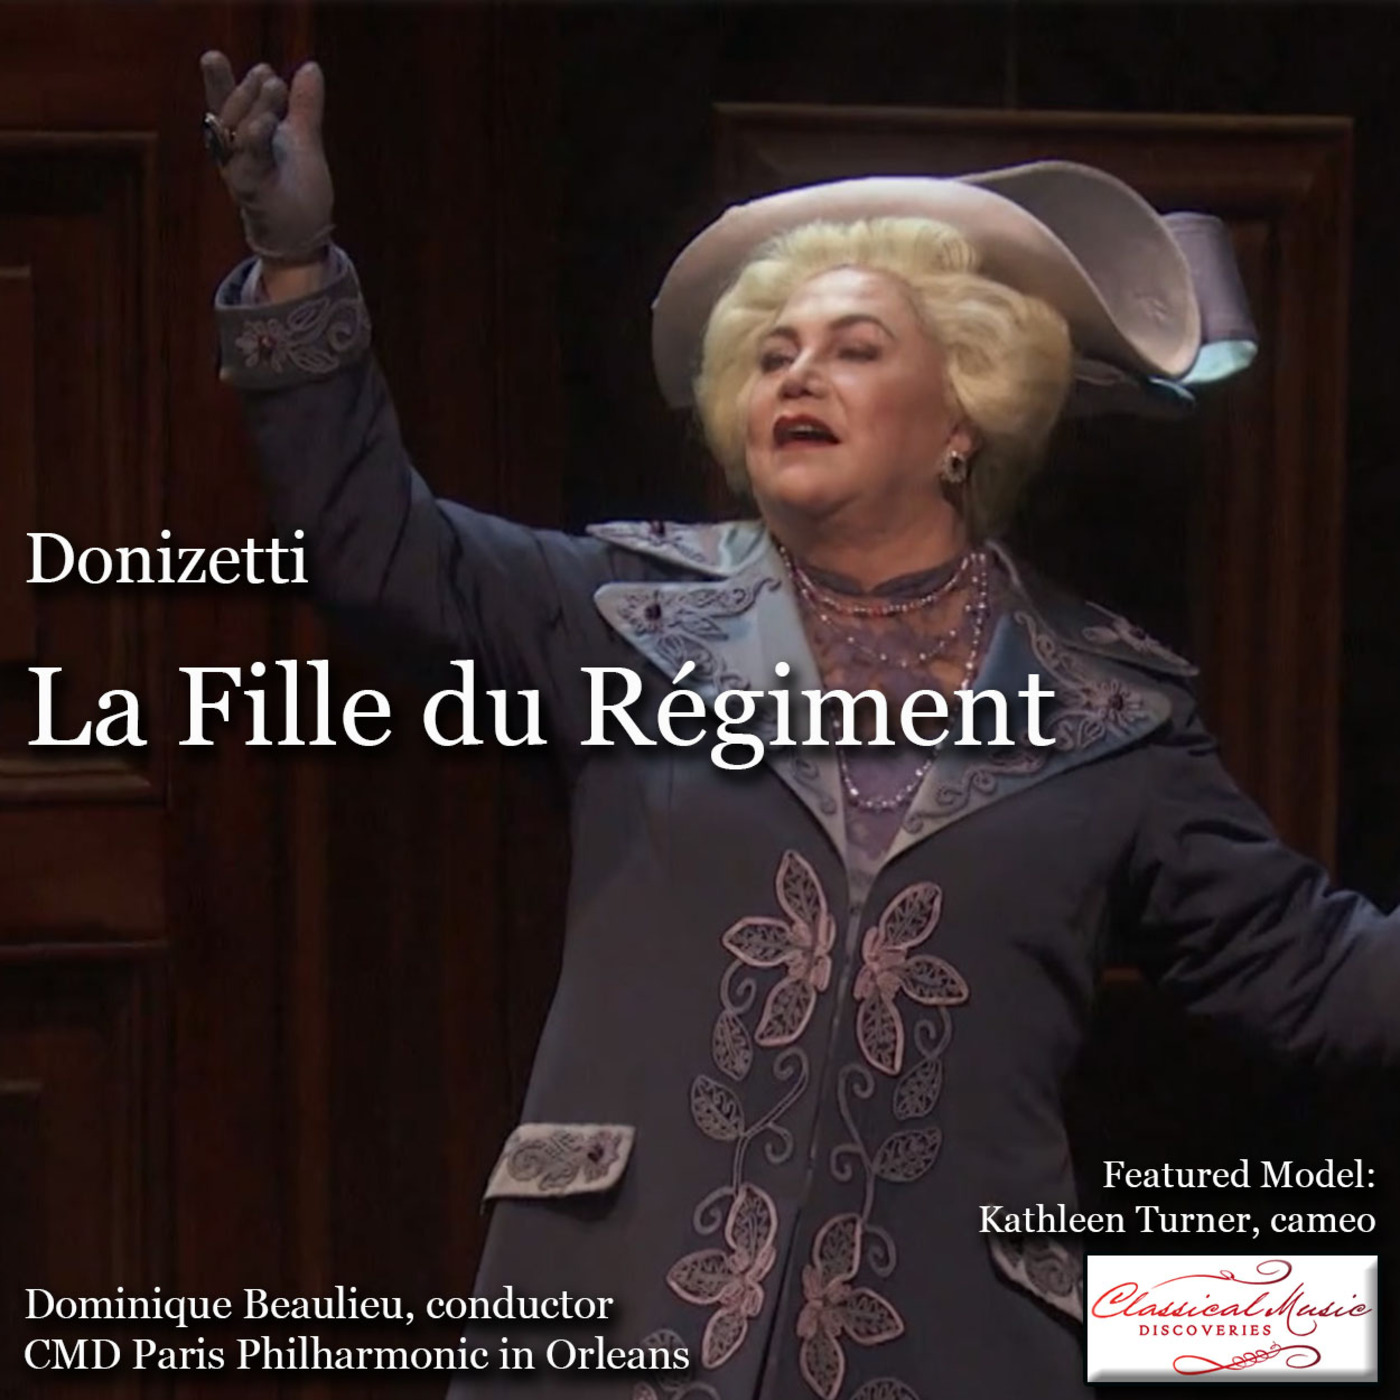 Episode 134: 17134 Donizetti: La Fille du Régiment